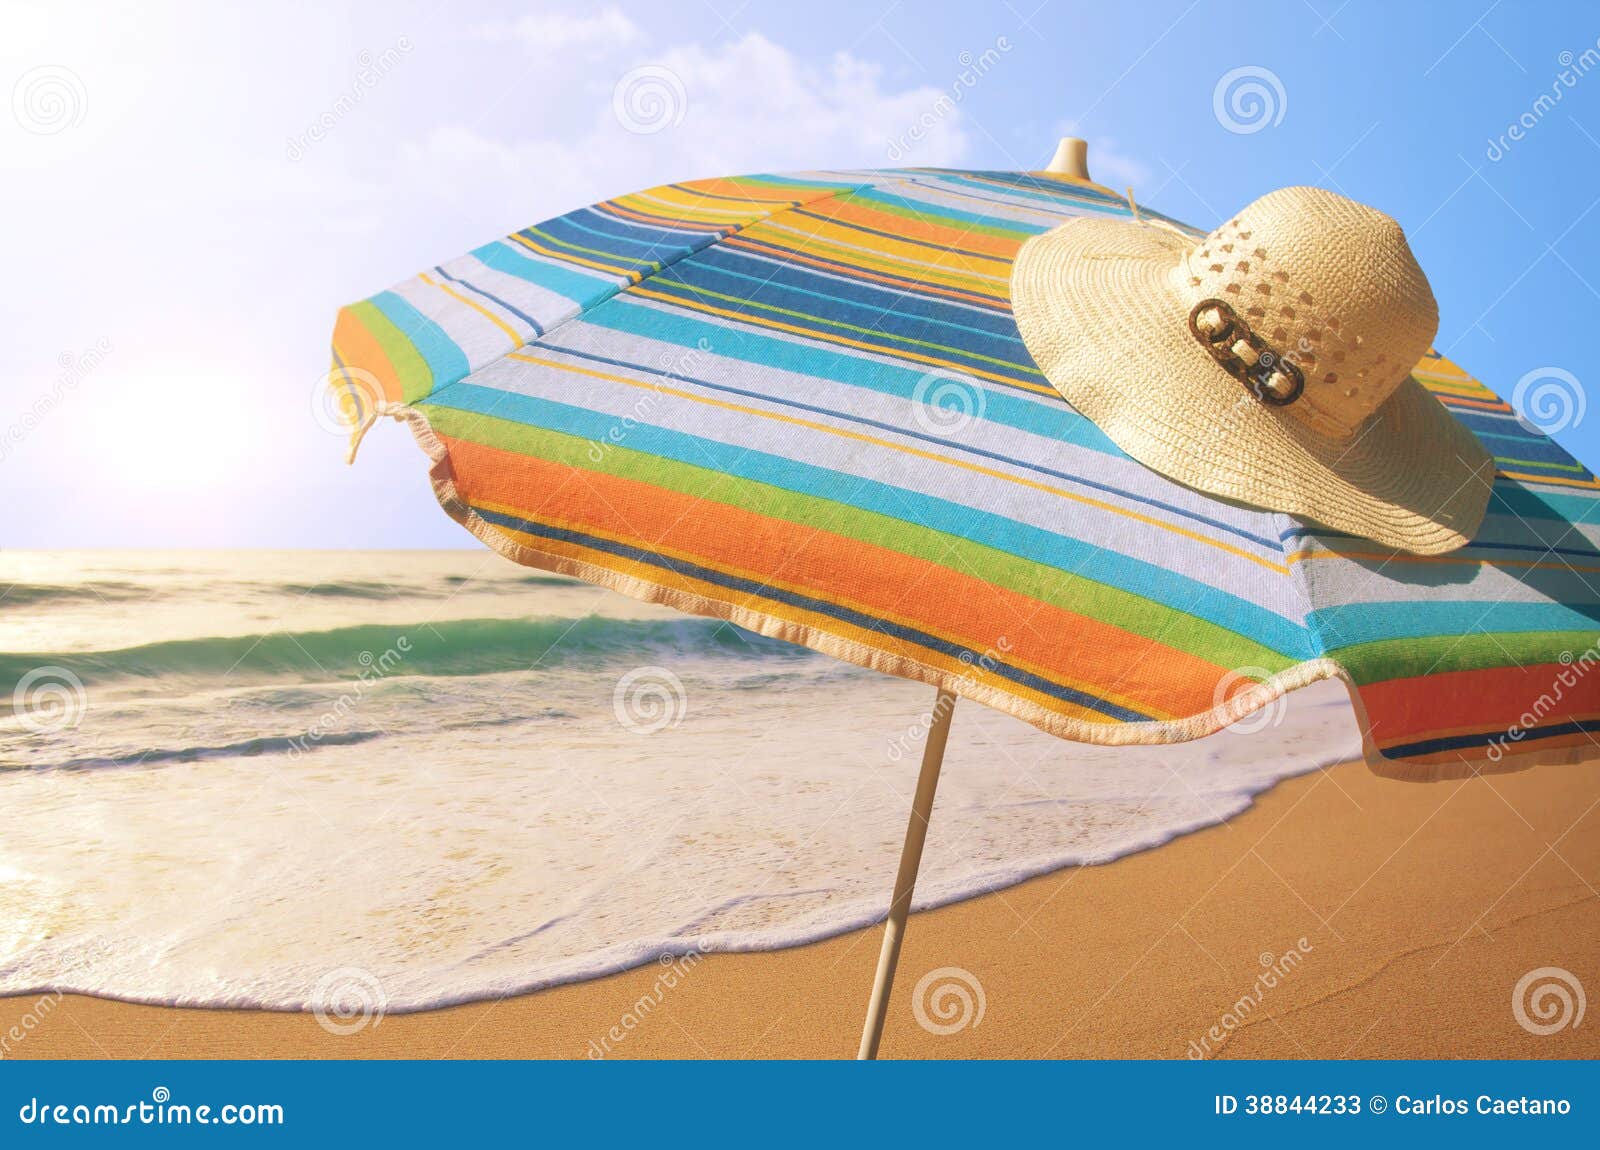 sunshade and straw hat